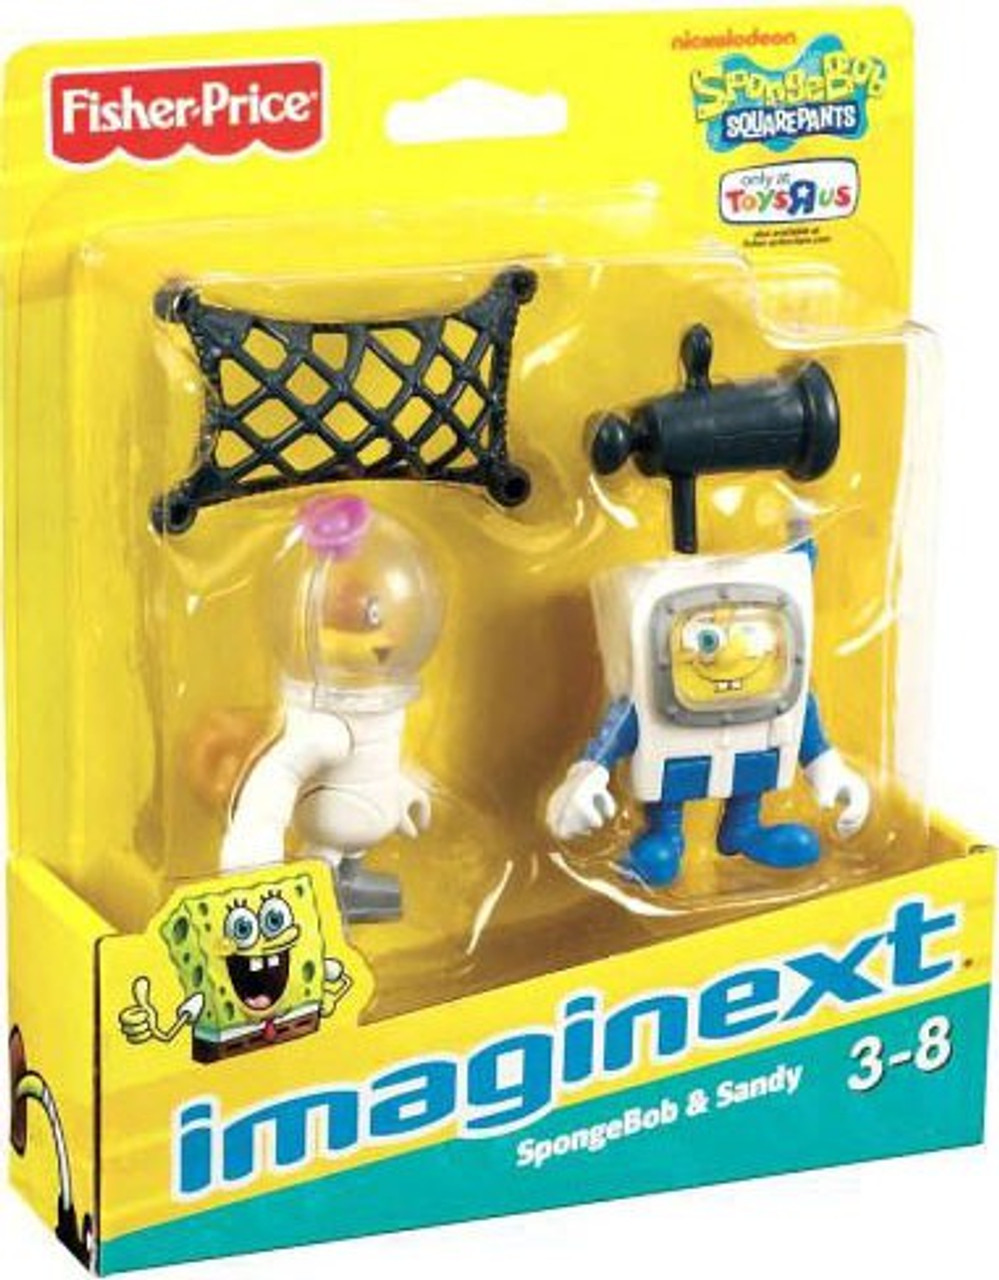 Игрушка которая дышит. Spongebob Squarepants игрушки. Игрушка Сэнди минифигурка.